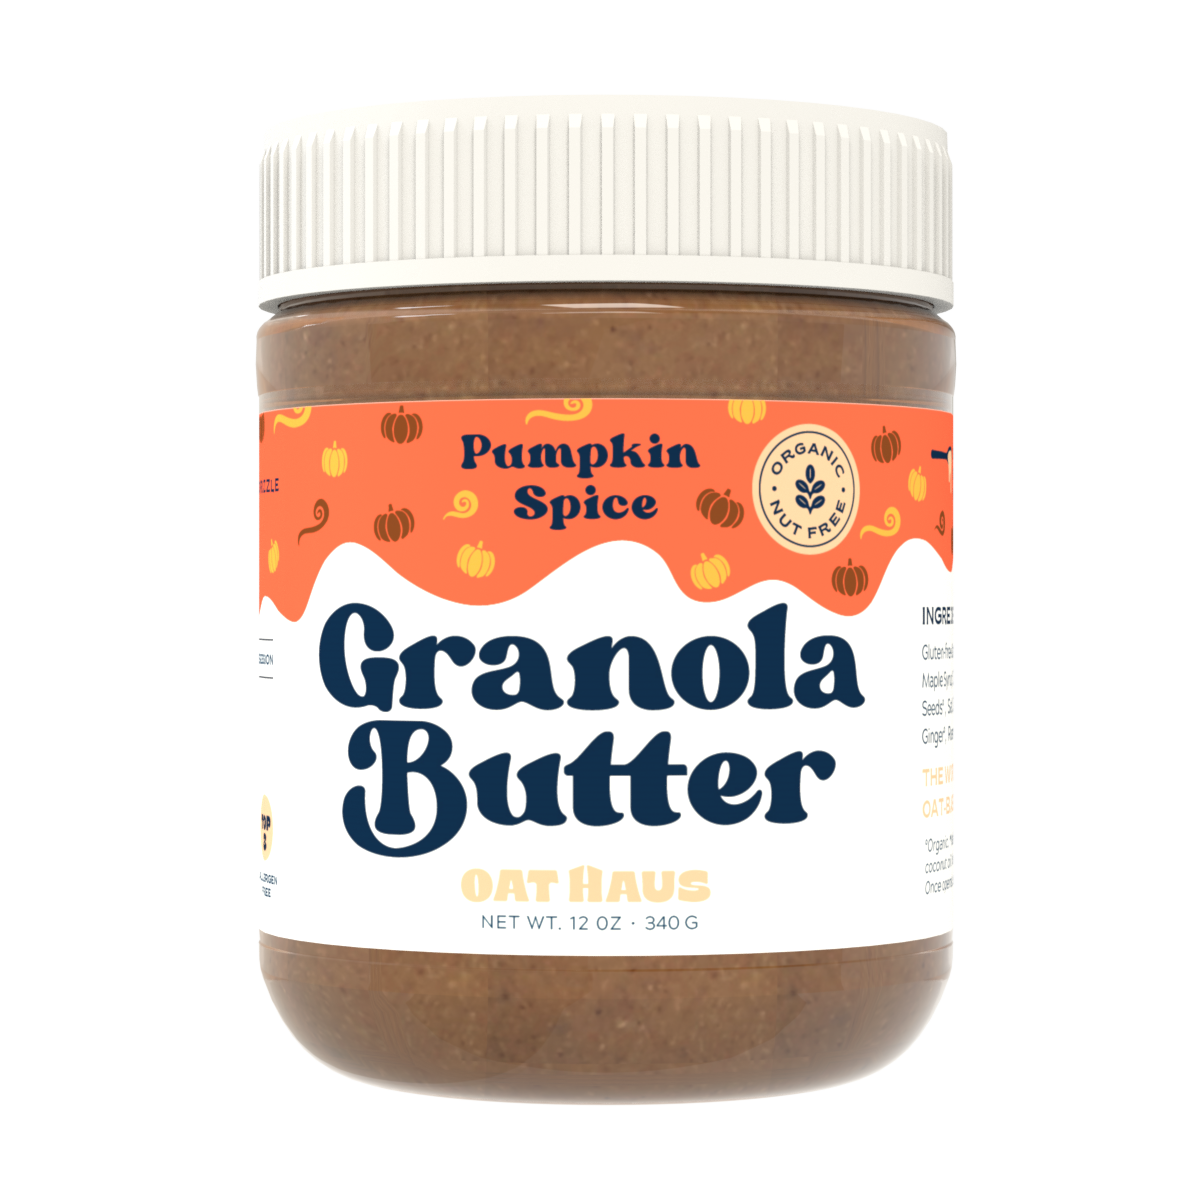 Pumpkin Spice Granola Butter | Nut-free, Vegan, GF Spread